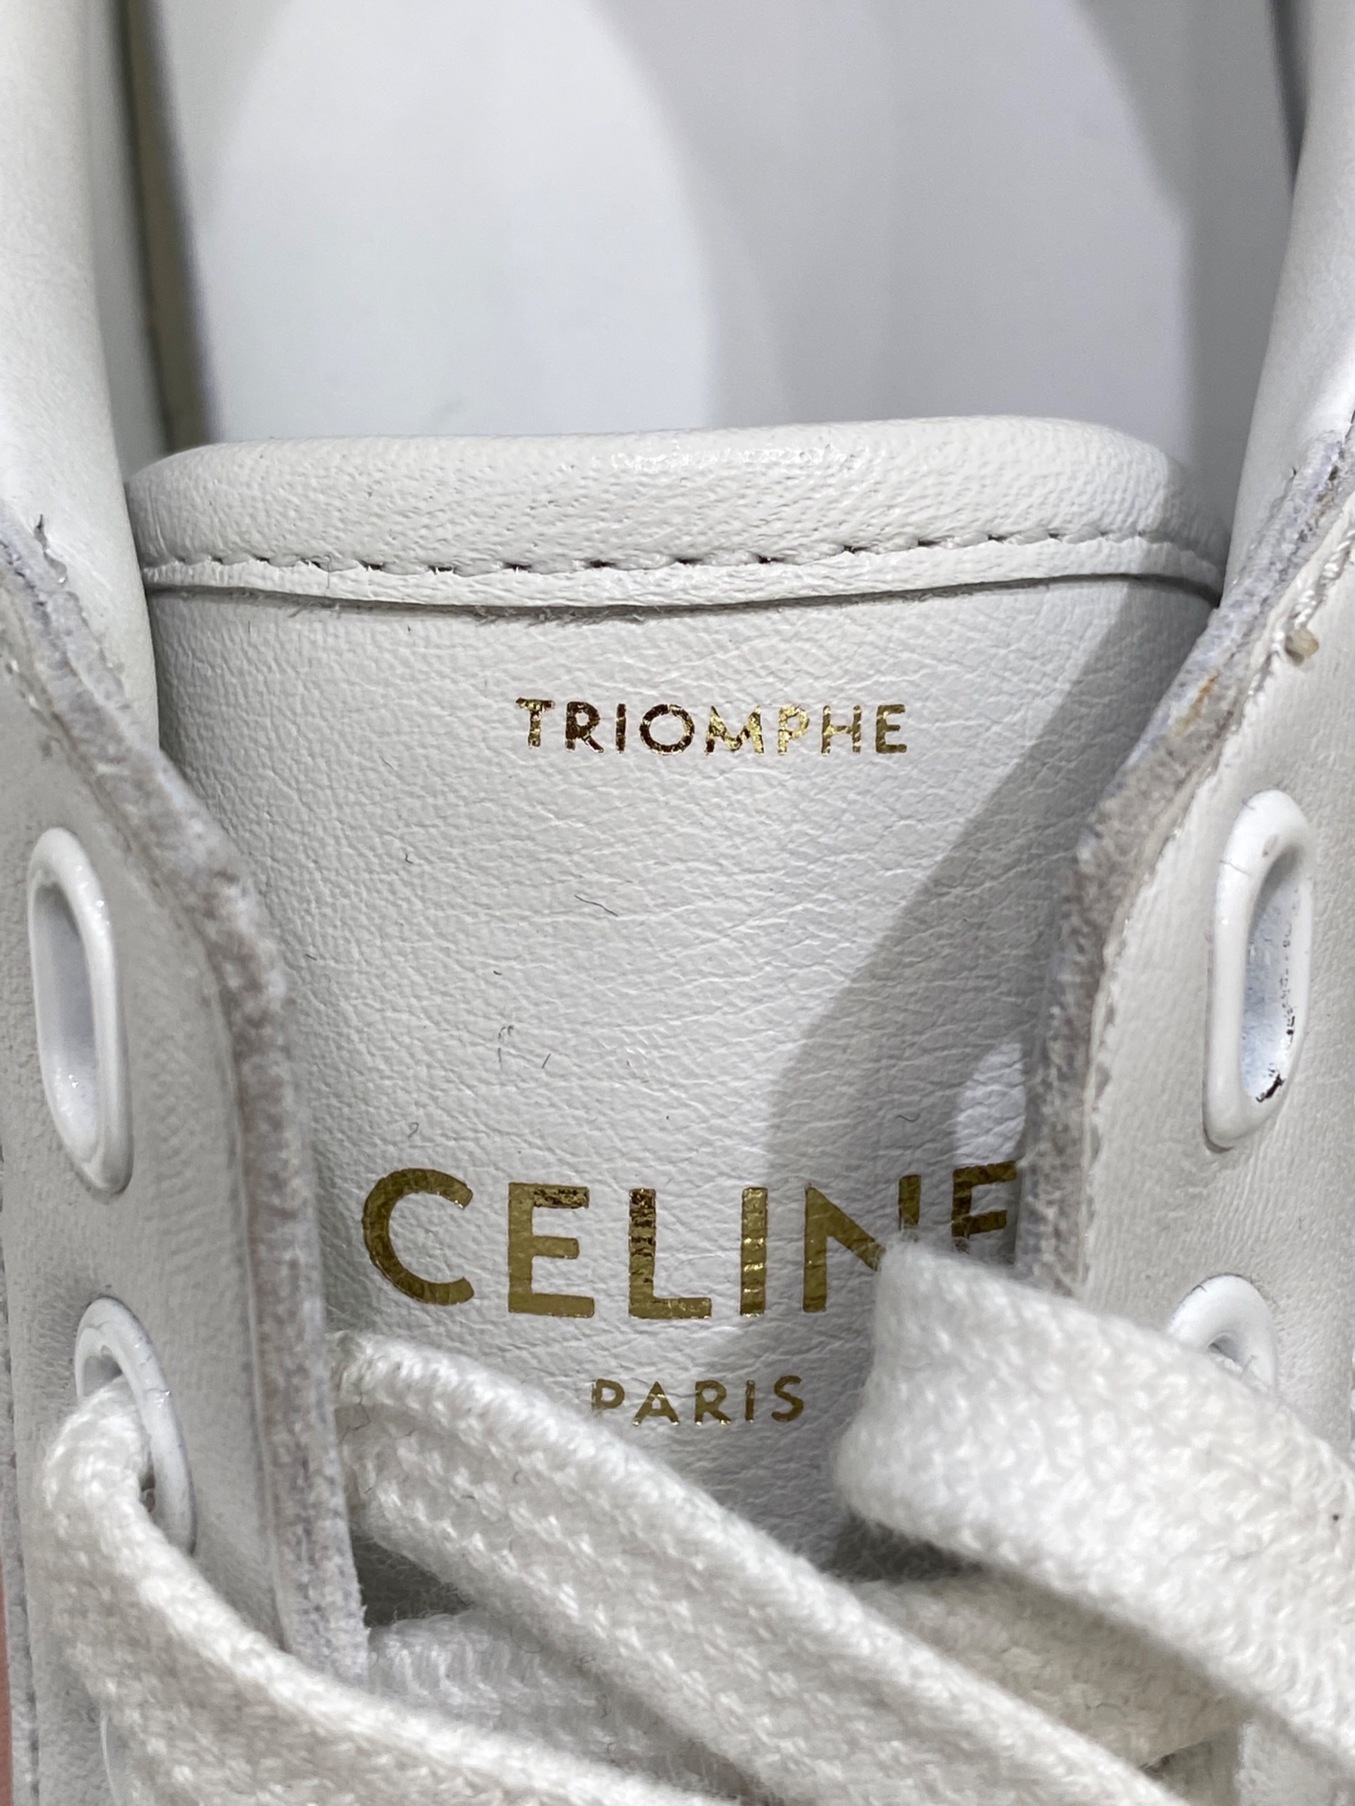 CELINE (セリーヌ) トリオンフテニススニーカー サイズ:38